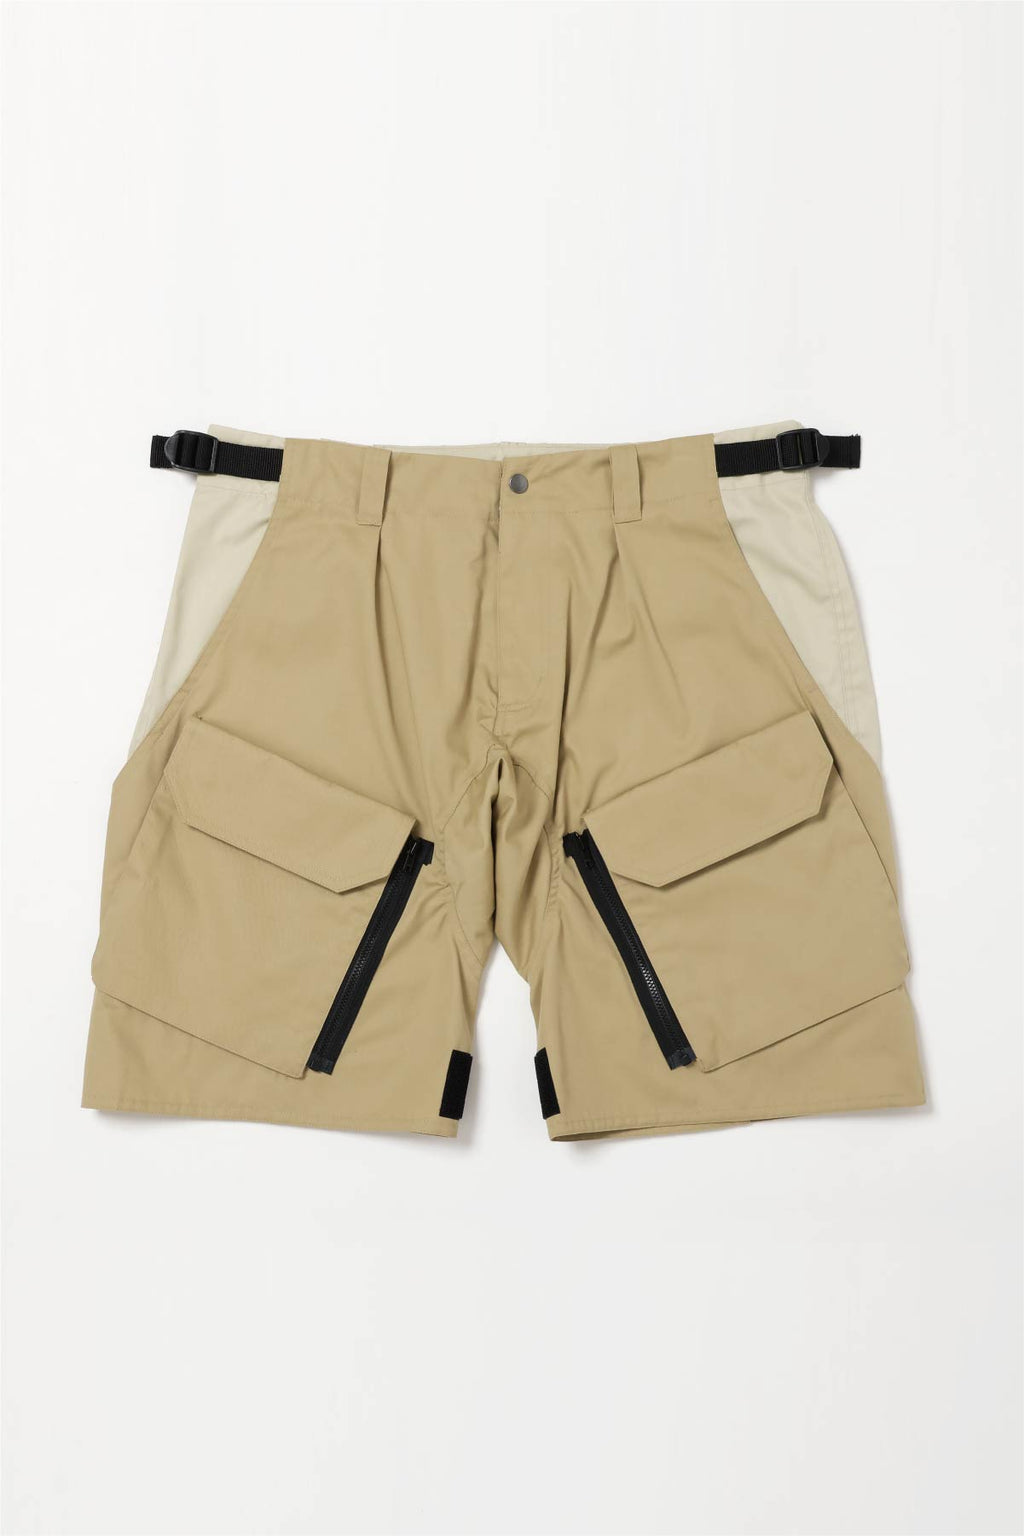 Flap Shorts【Beige × Ivory】